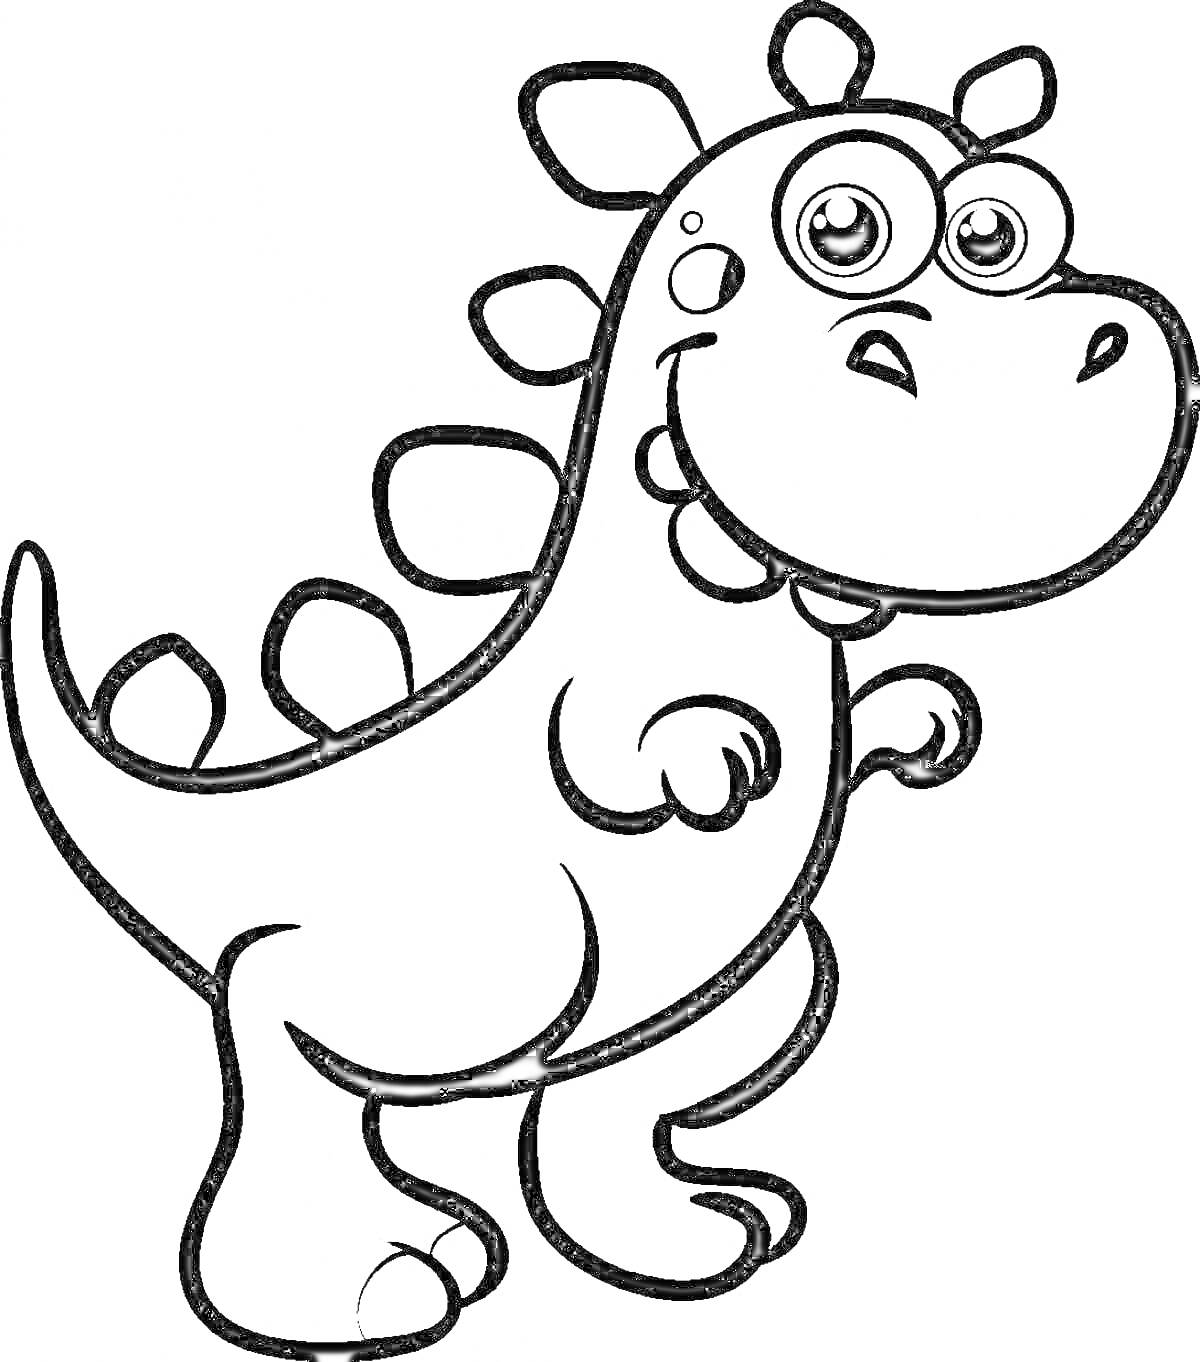 Раскраска Динозаврик с крупной головой и большими глазами, стоящий на задних лапах, с гребнем на спине и мелкими пятнами на теле.